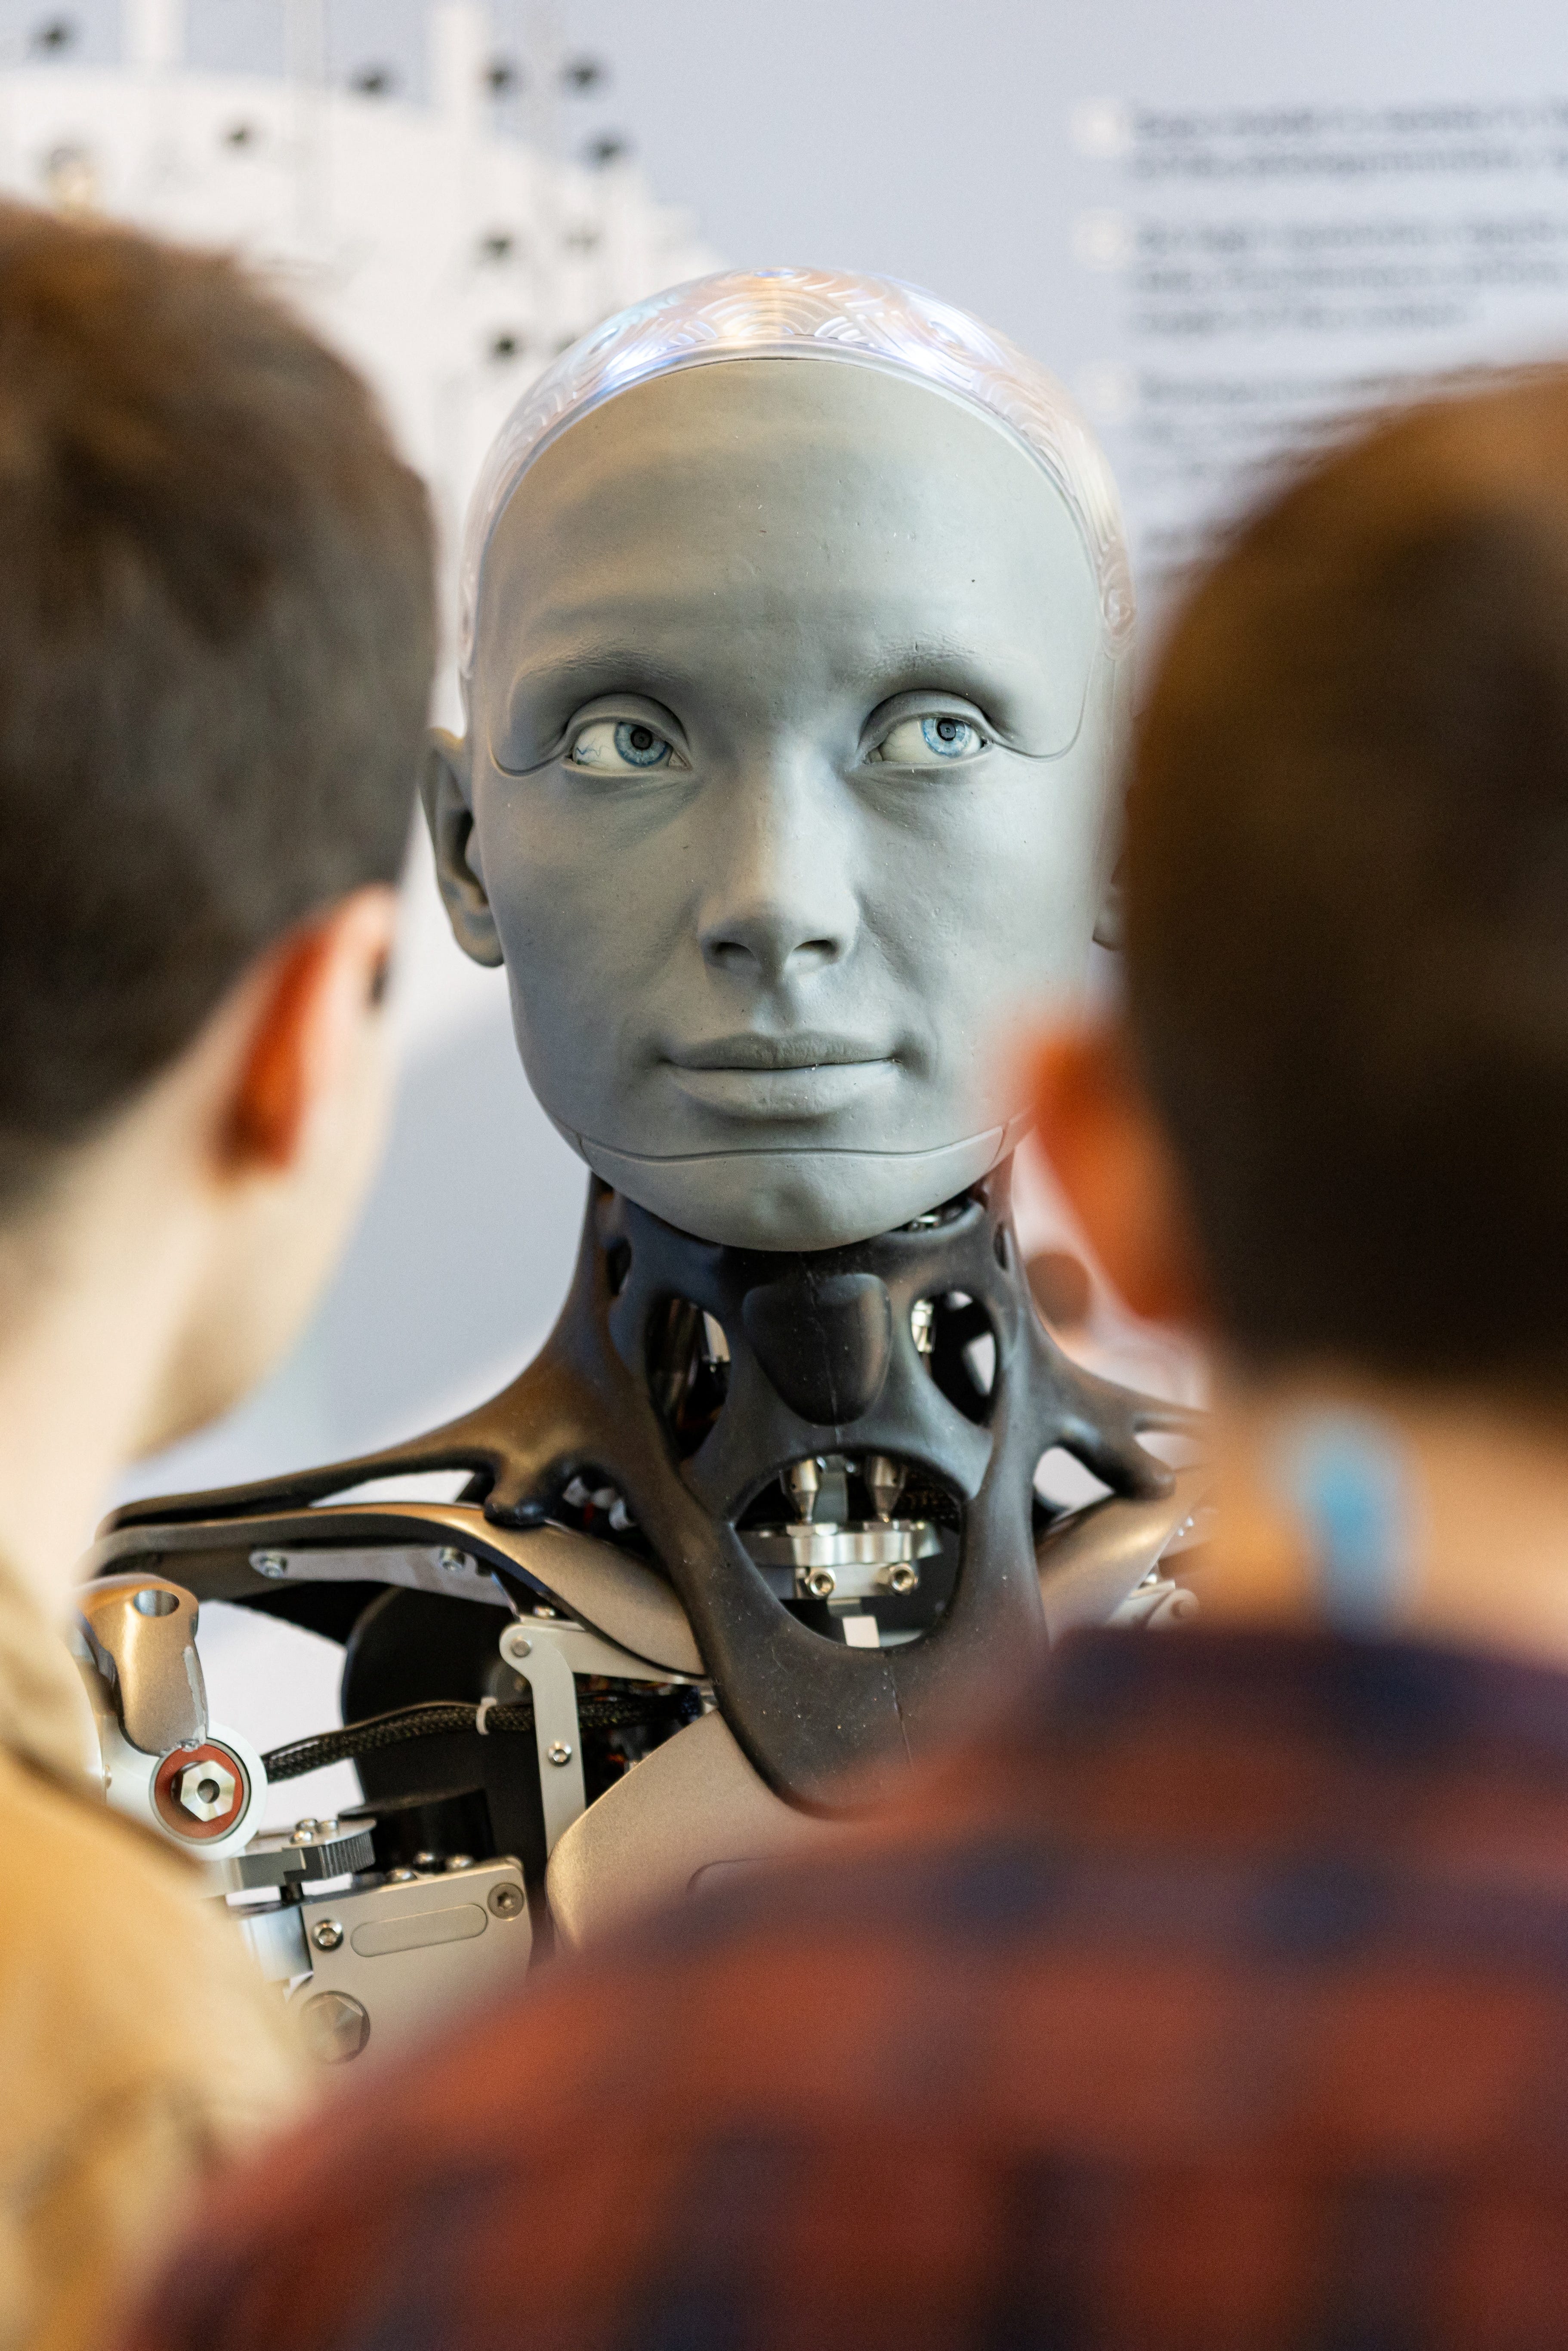 2028年には市場規模は2兆円に…最新の人型ロボット8体 | Business